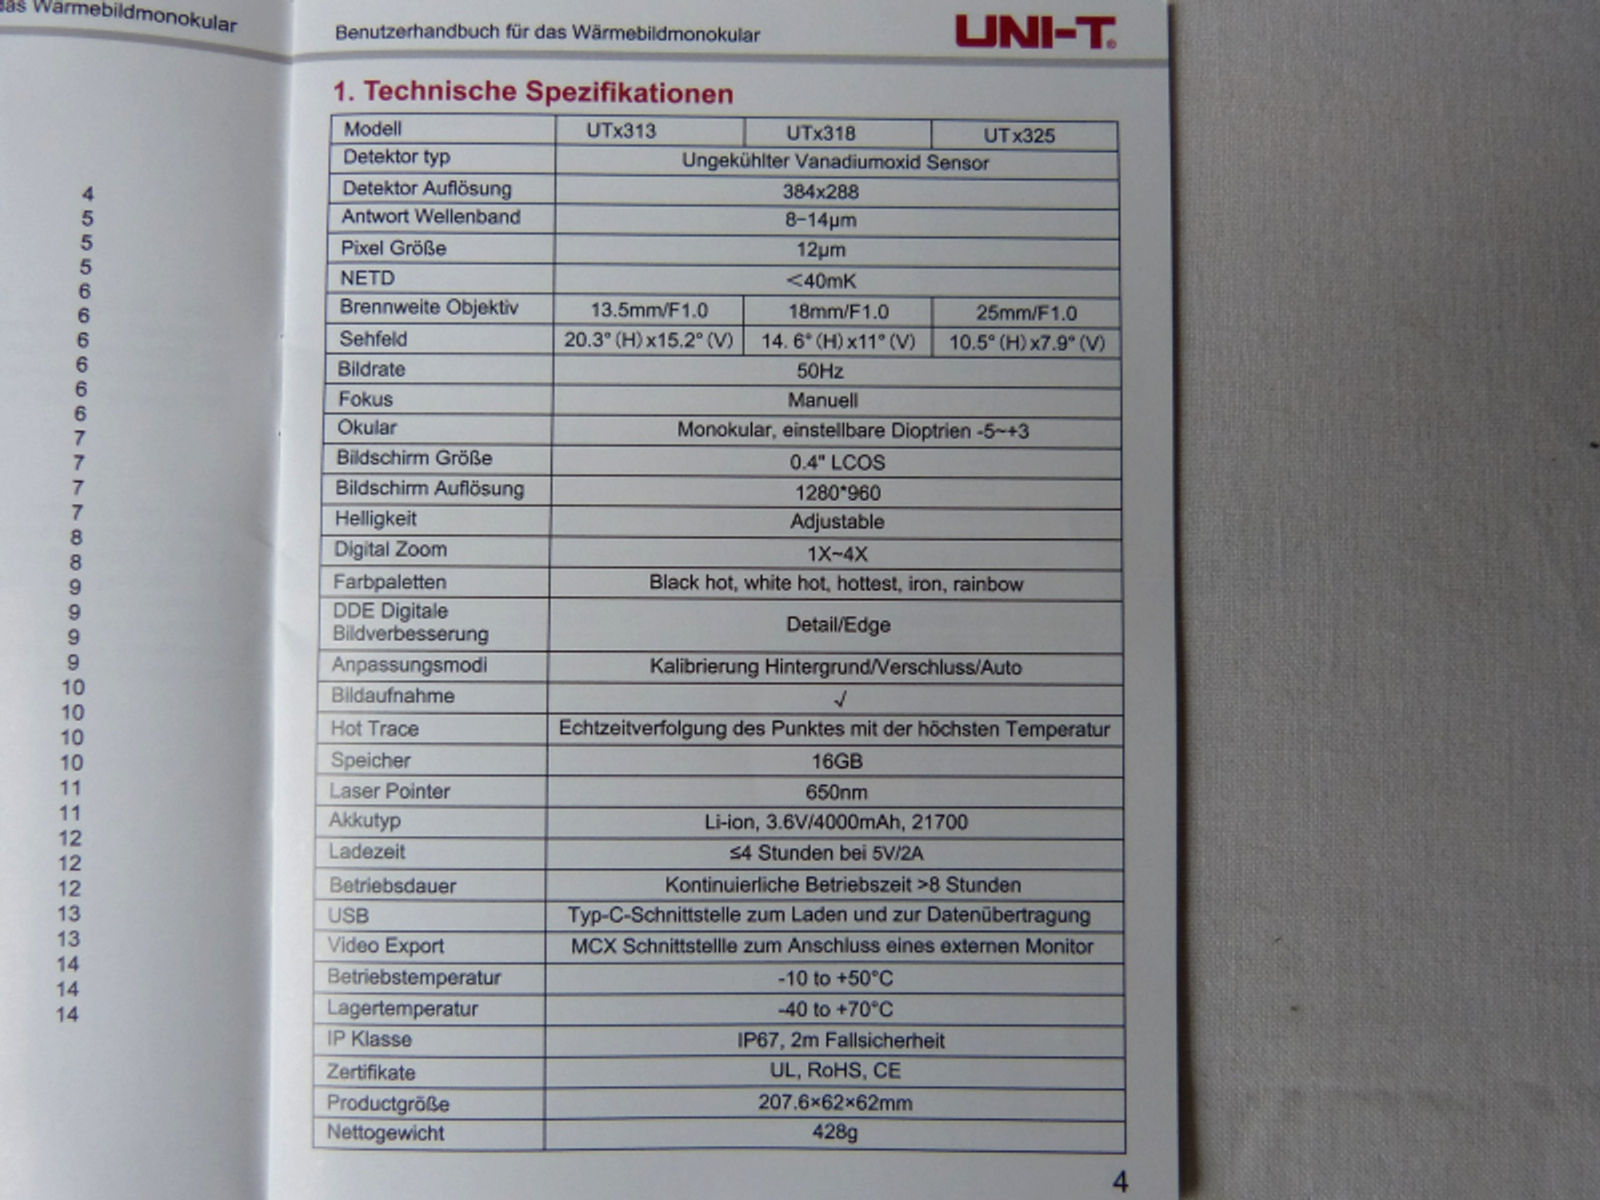 UNI-T Wärmebild-Handgerät UTx318 Wärmebildkamera